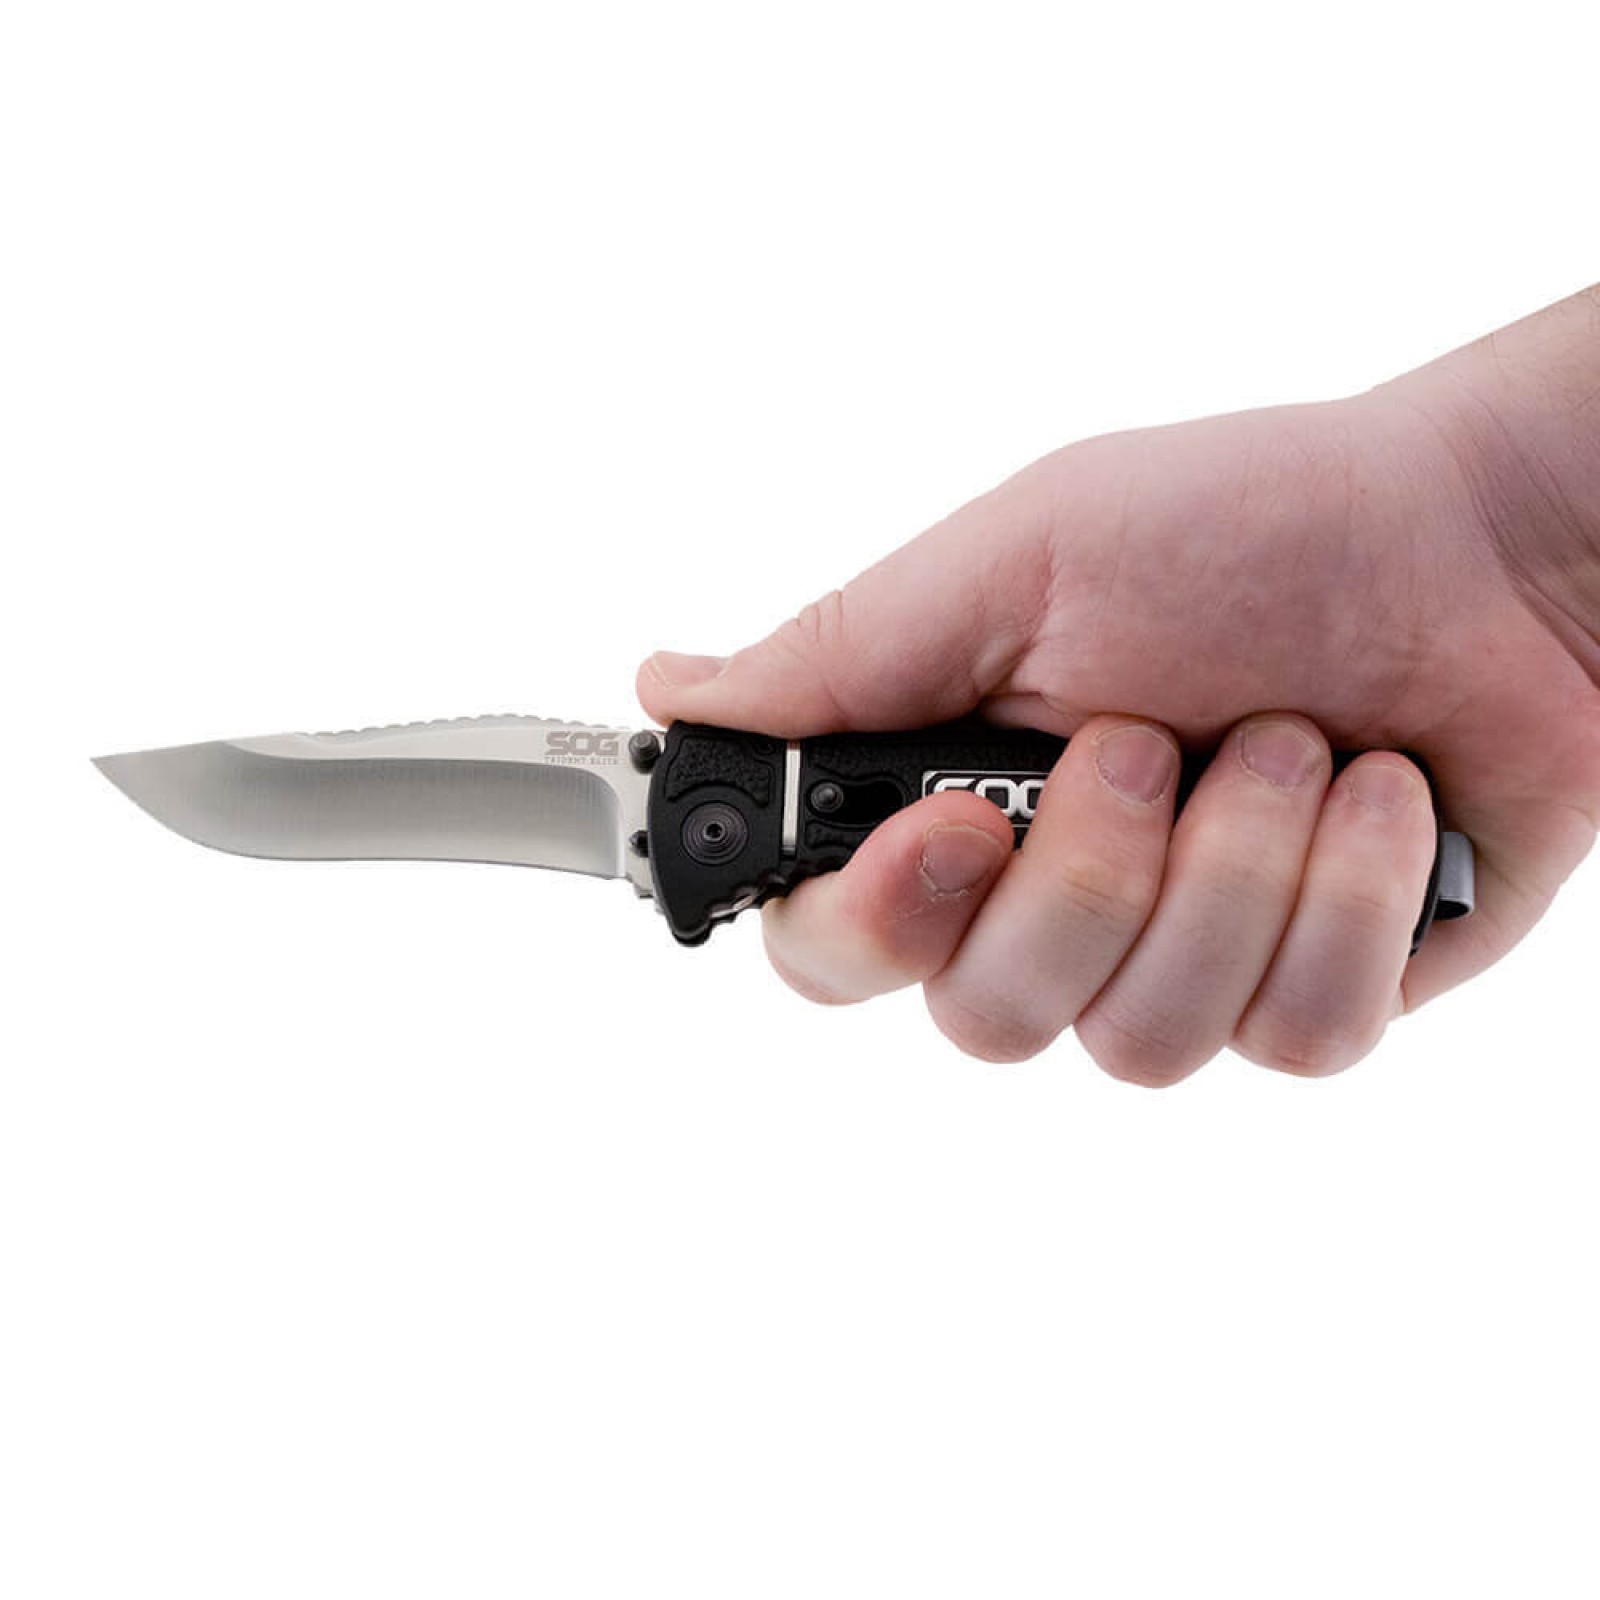 Складной нож TRIDENT ELITE - SOG TF101, сталь AUS-8, рукоять термопластик GRN с резиновыми вставками - фото 4